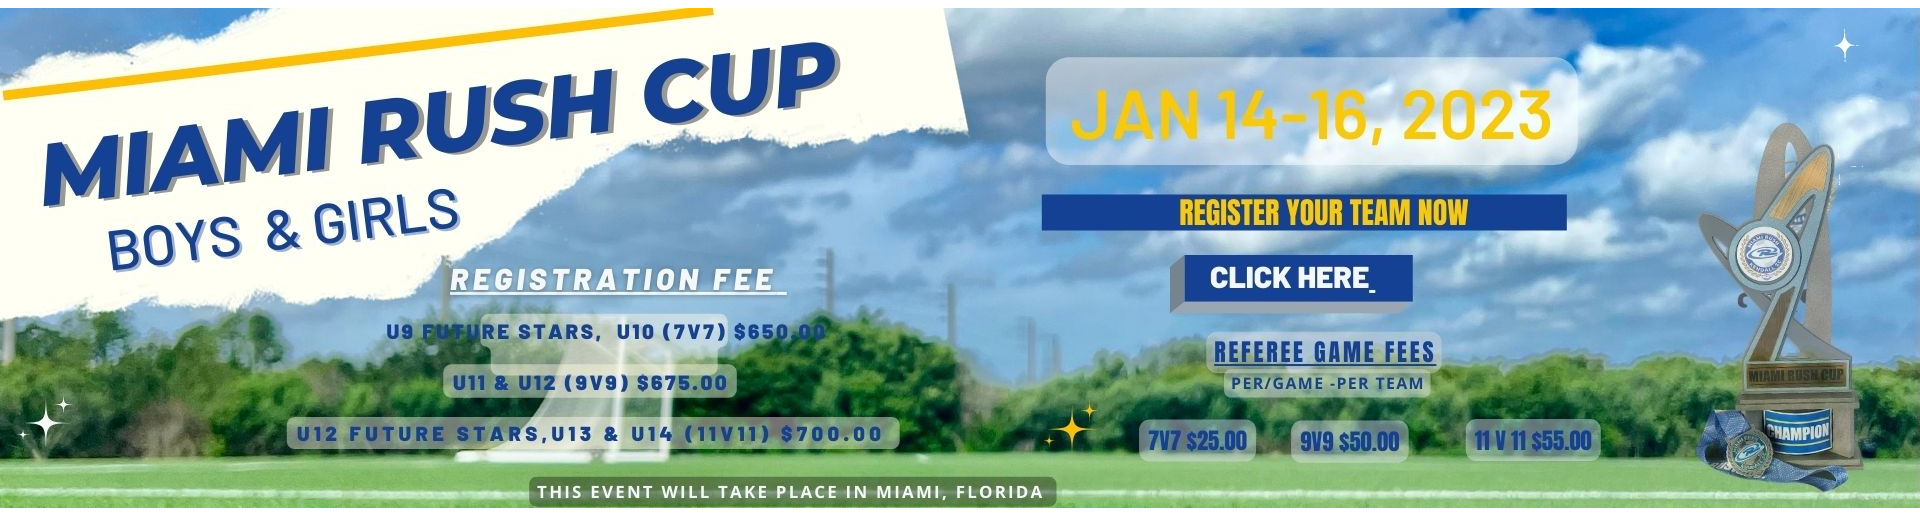 Miami Rush Cup 2023